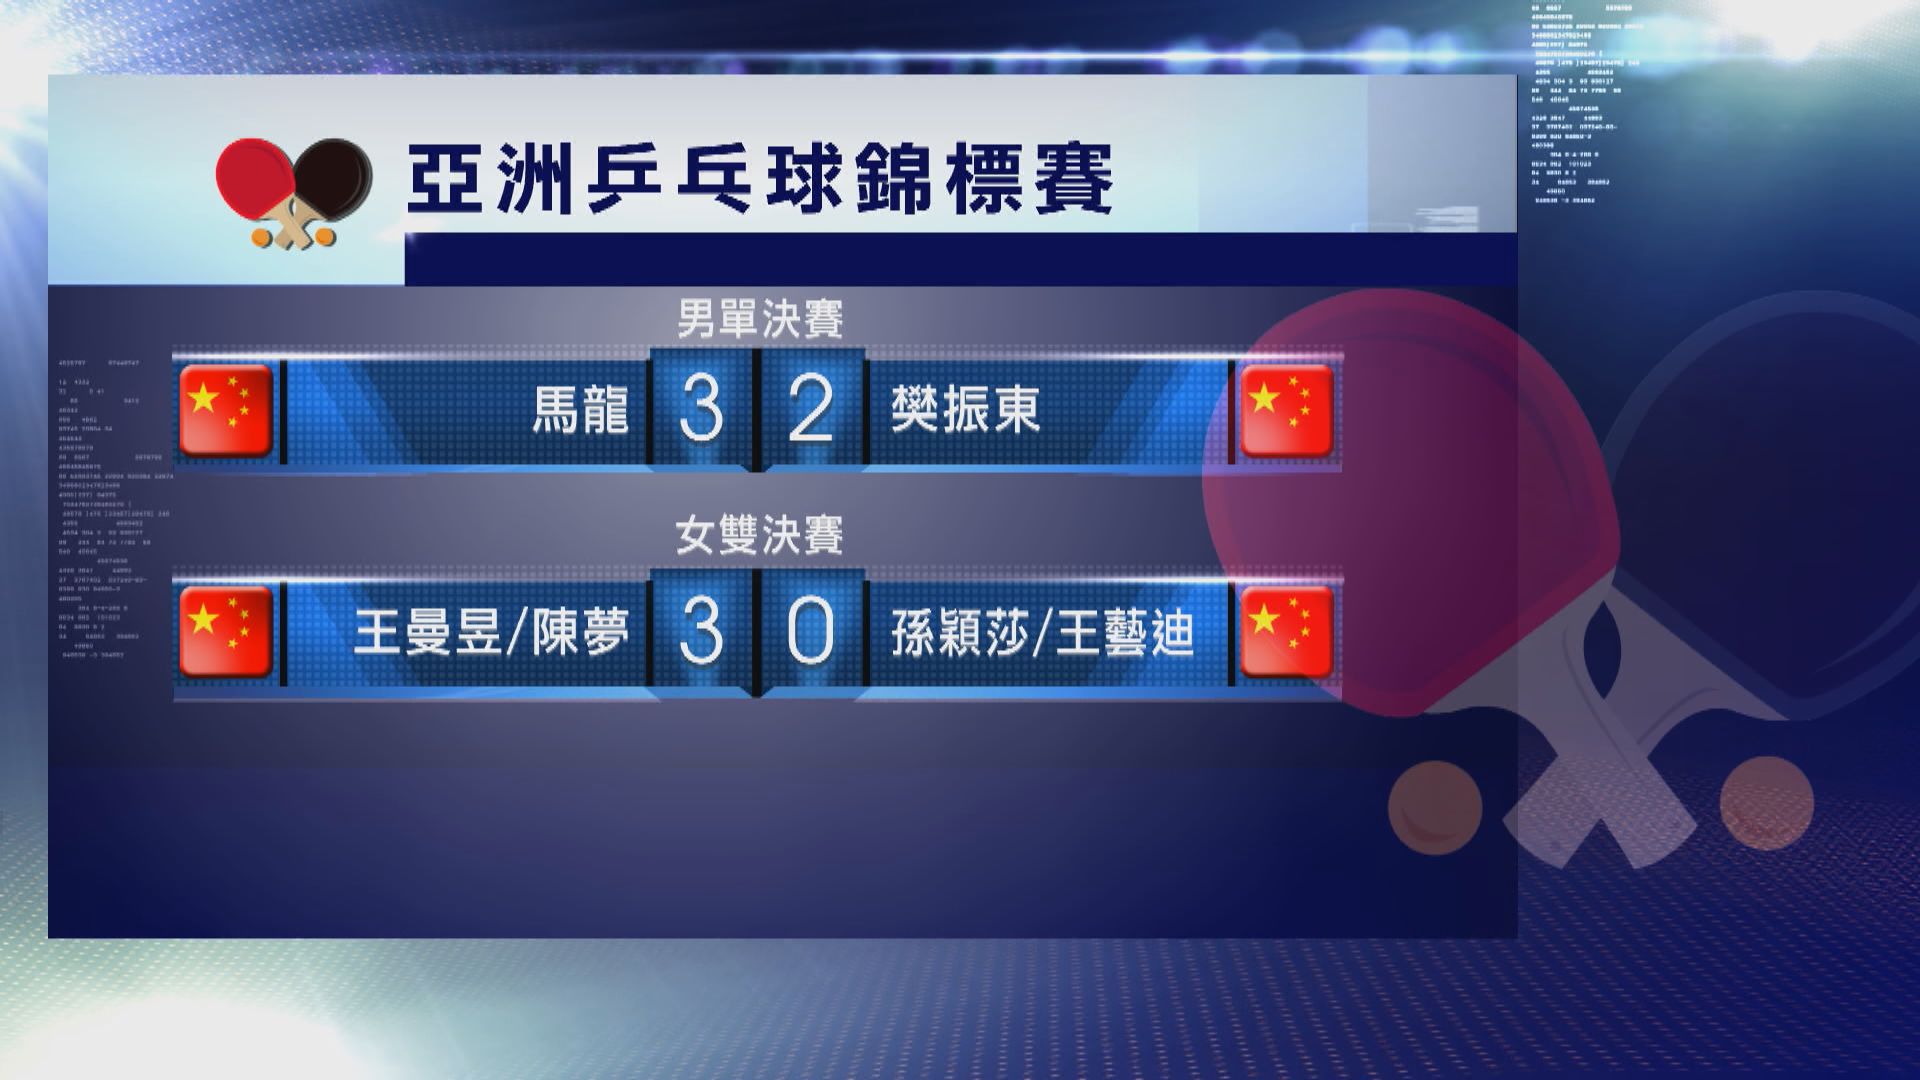 乒乓球亞錦賽 中國囊括七個項目金牌